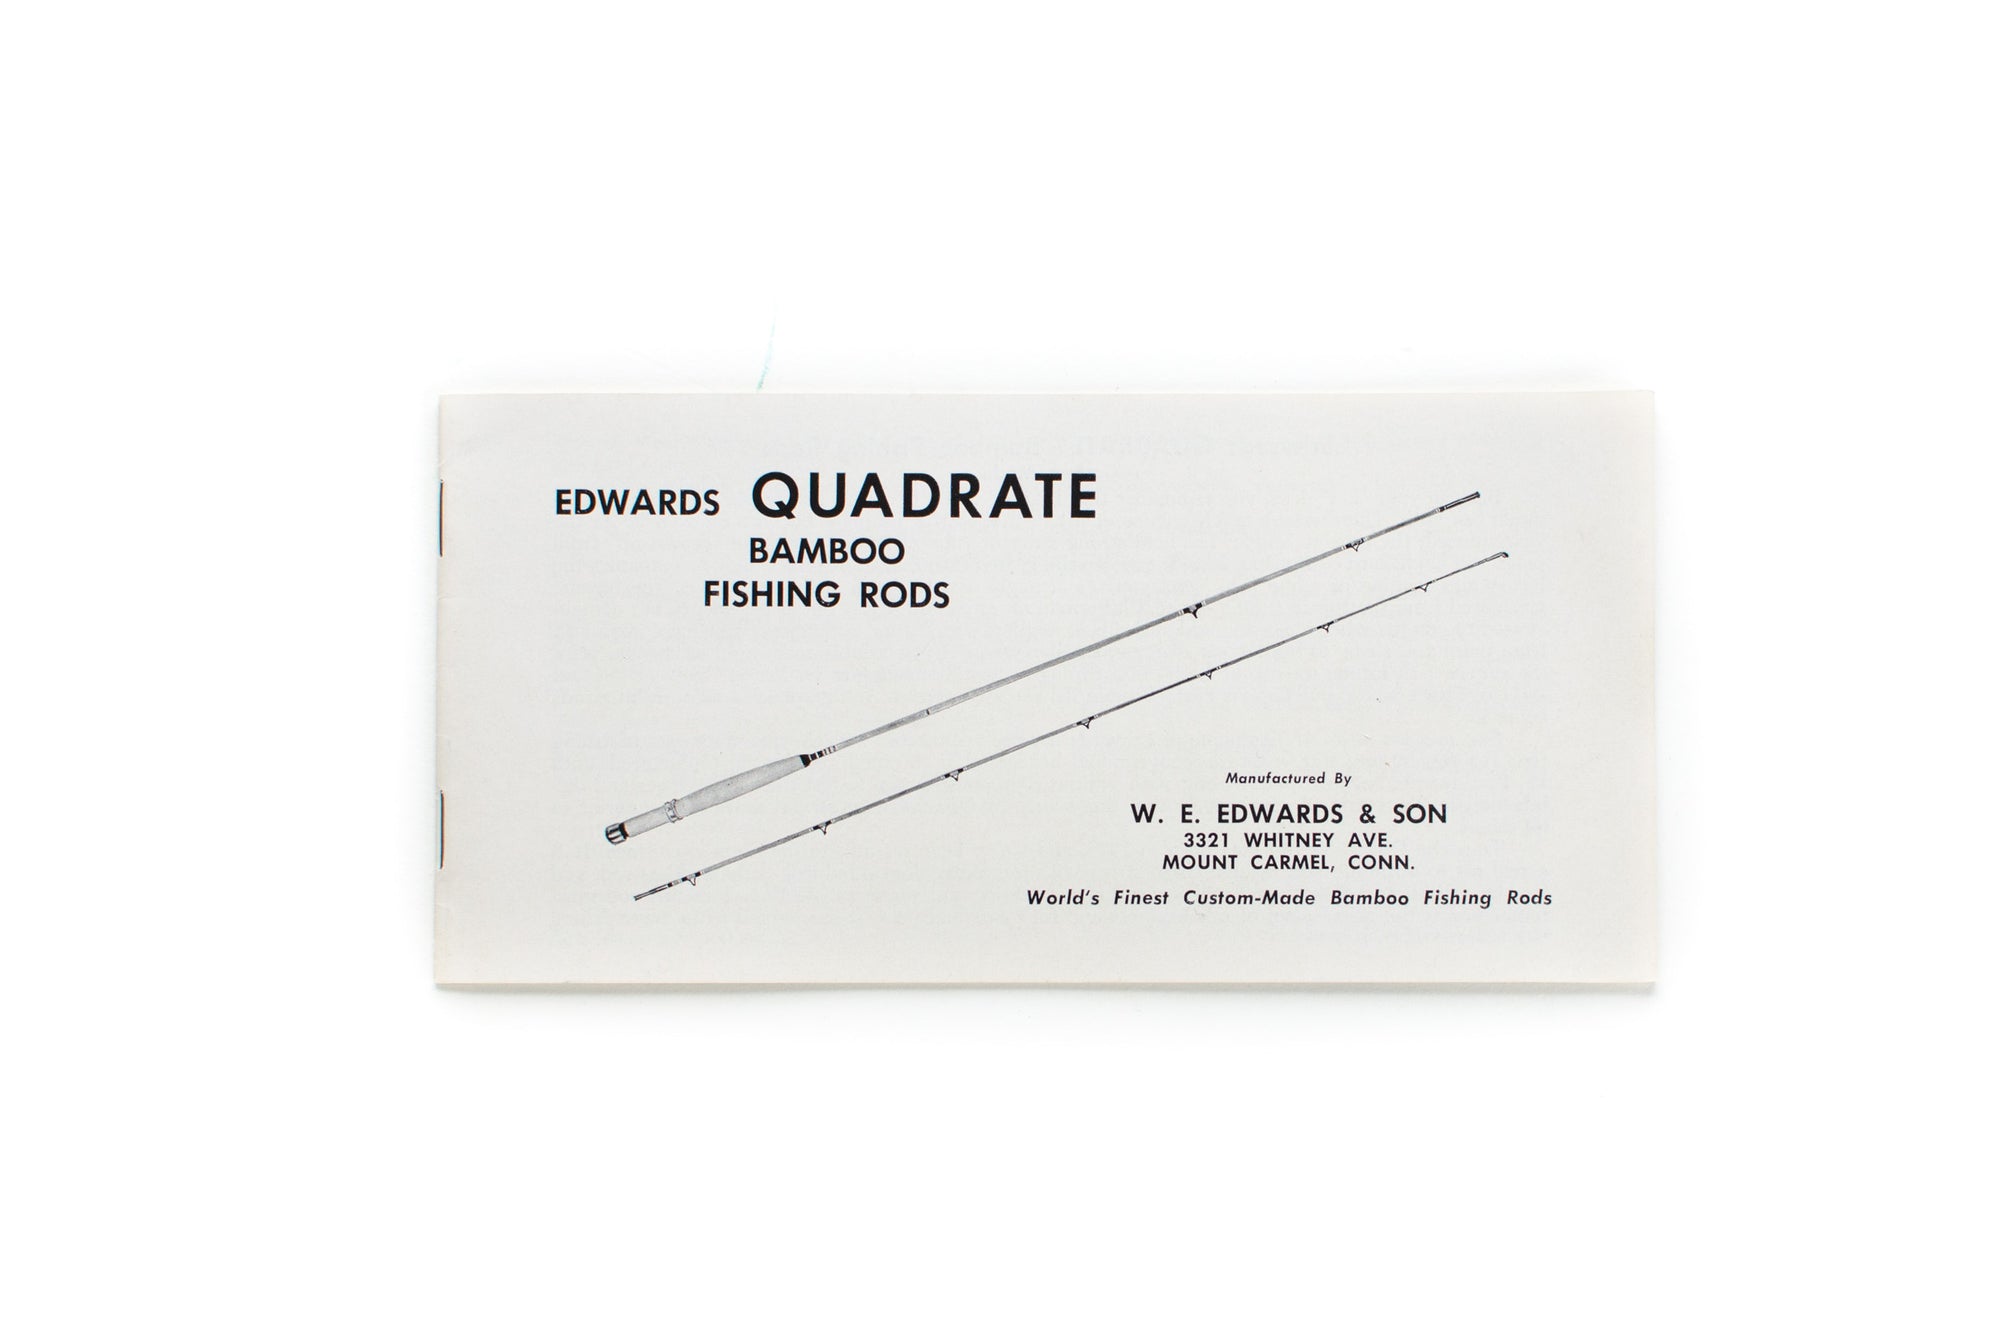 Edwards Quadrate Bamboo Fly Rod Catalog